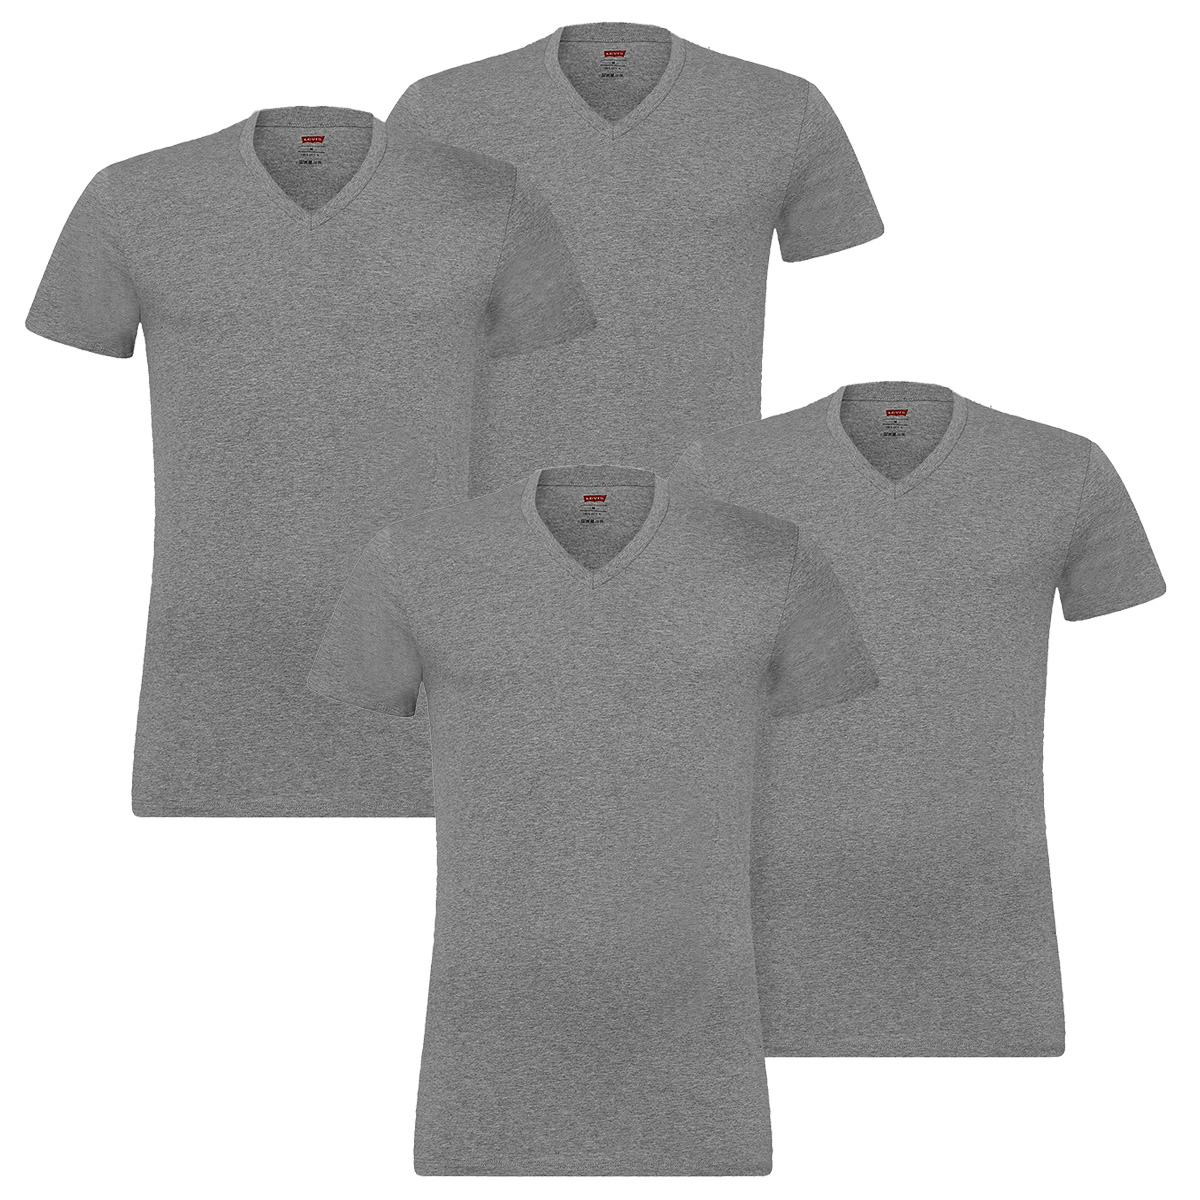 4 er Pack Levis V-Neck T-Shirt Men Herren Unterhemd V-Ausschnitt